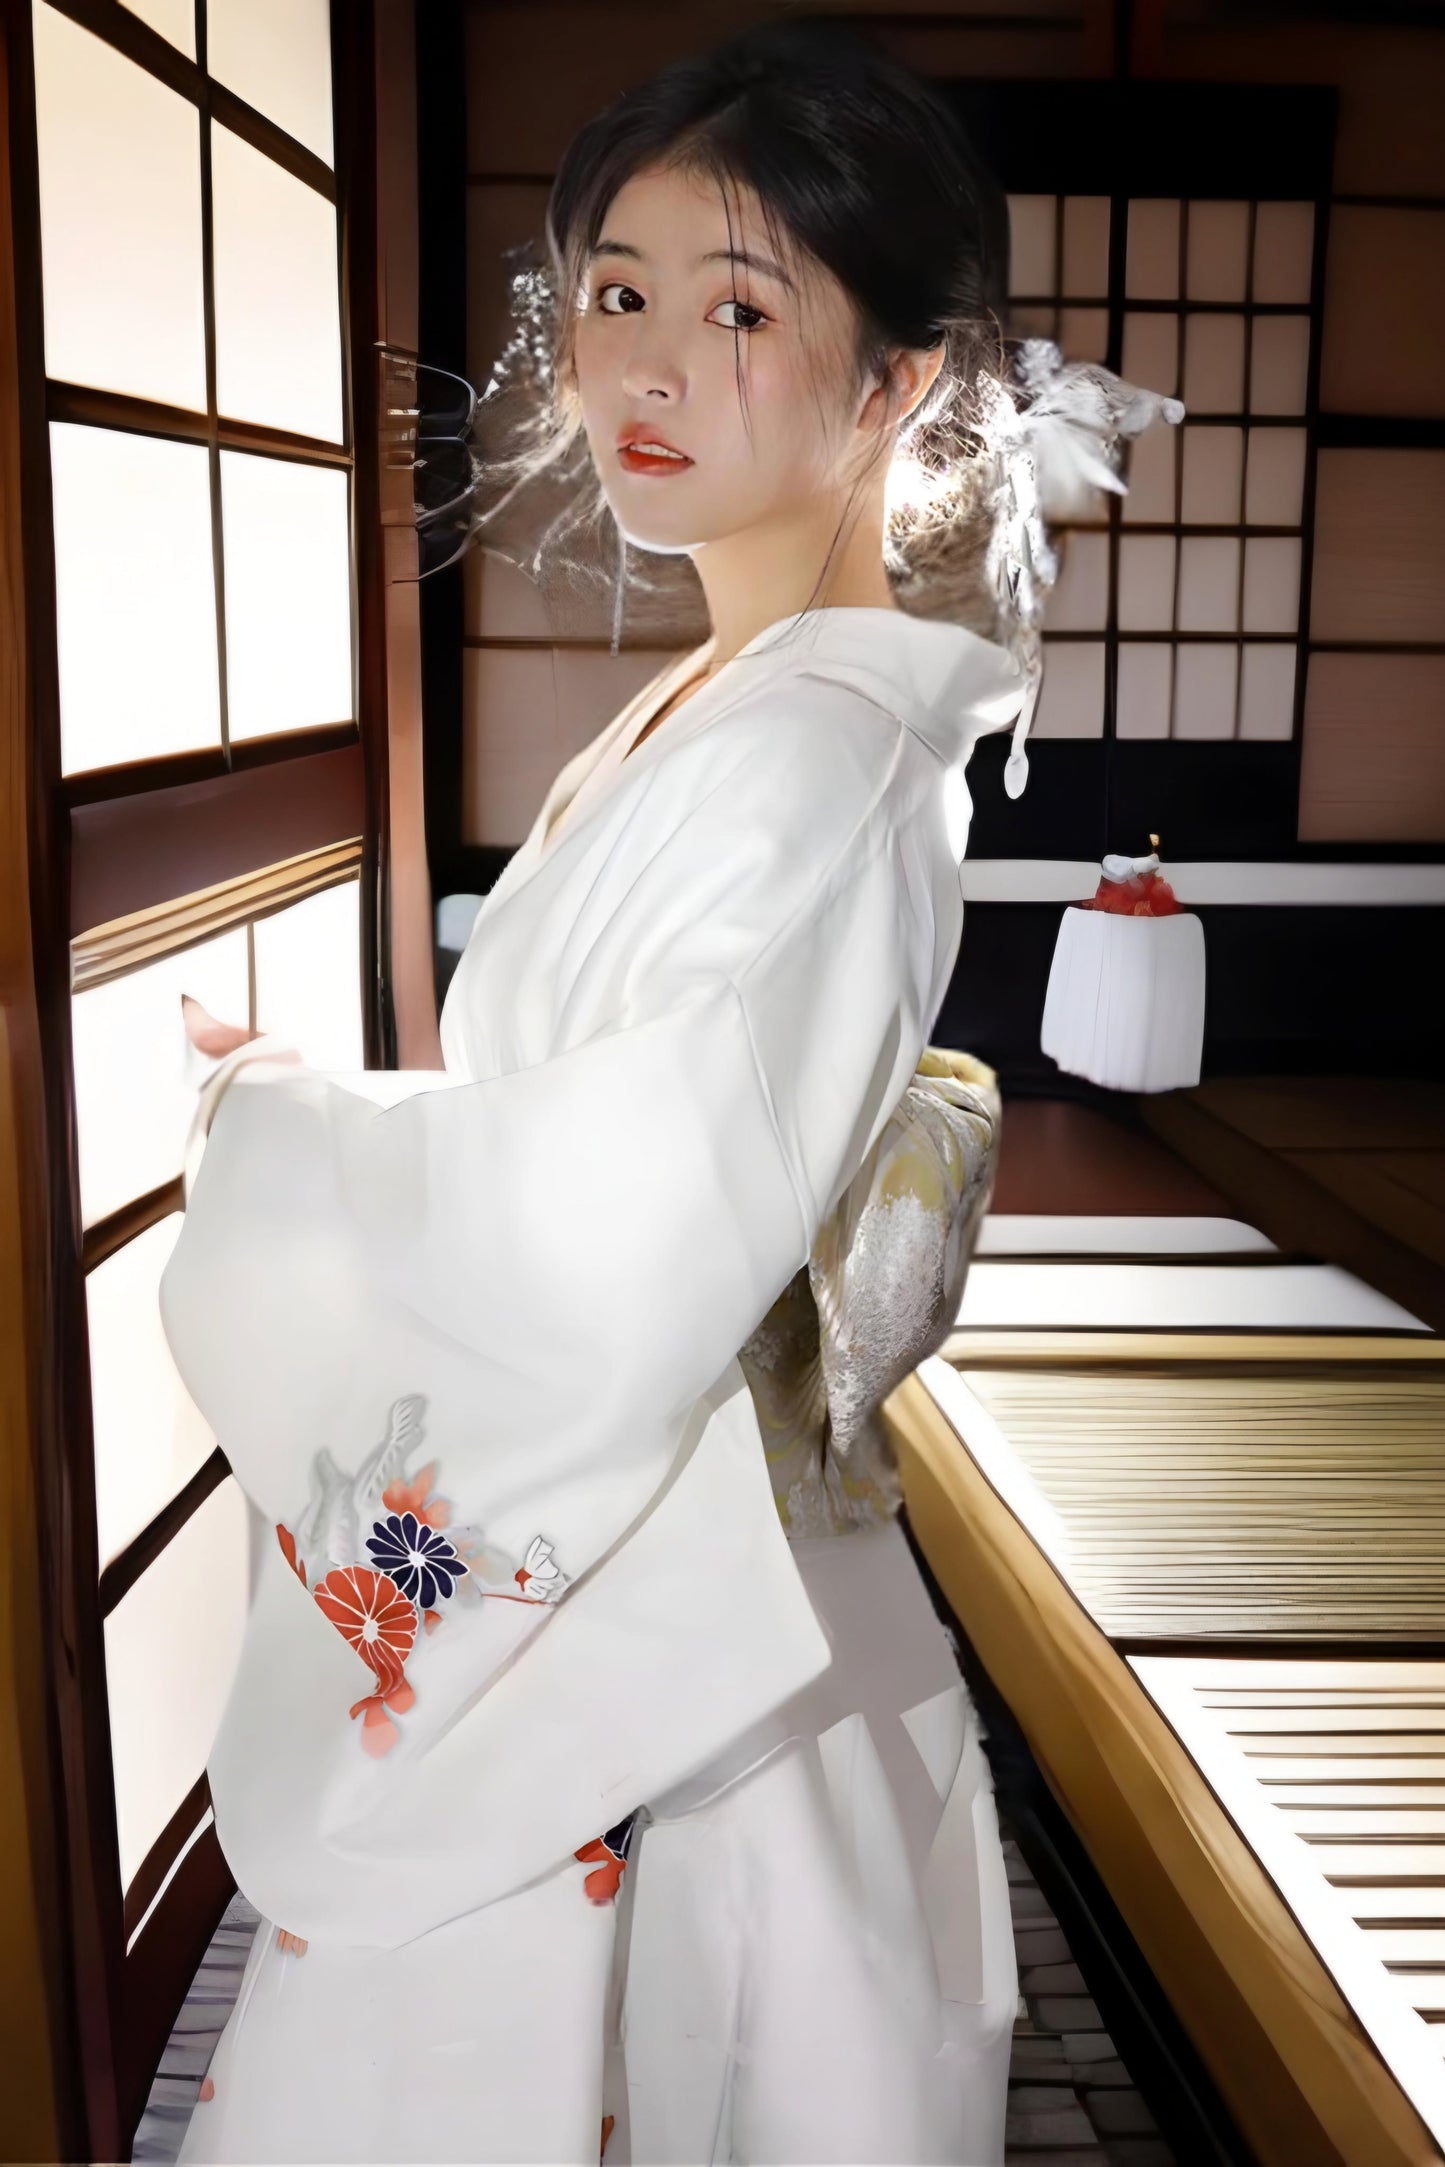 Women Daisy White Yukata Robe and Obi Belt Set